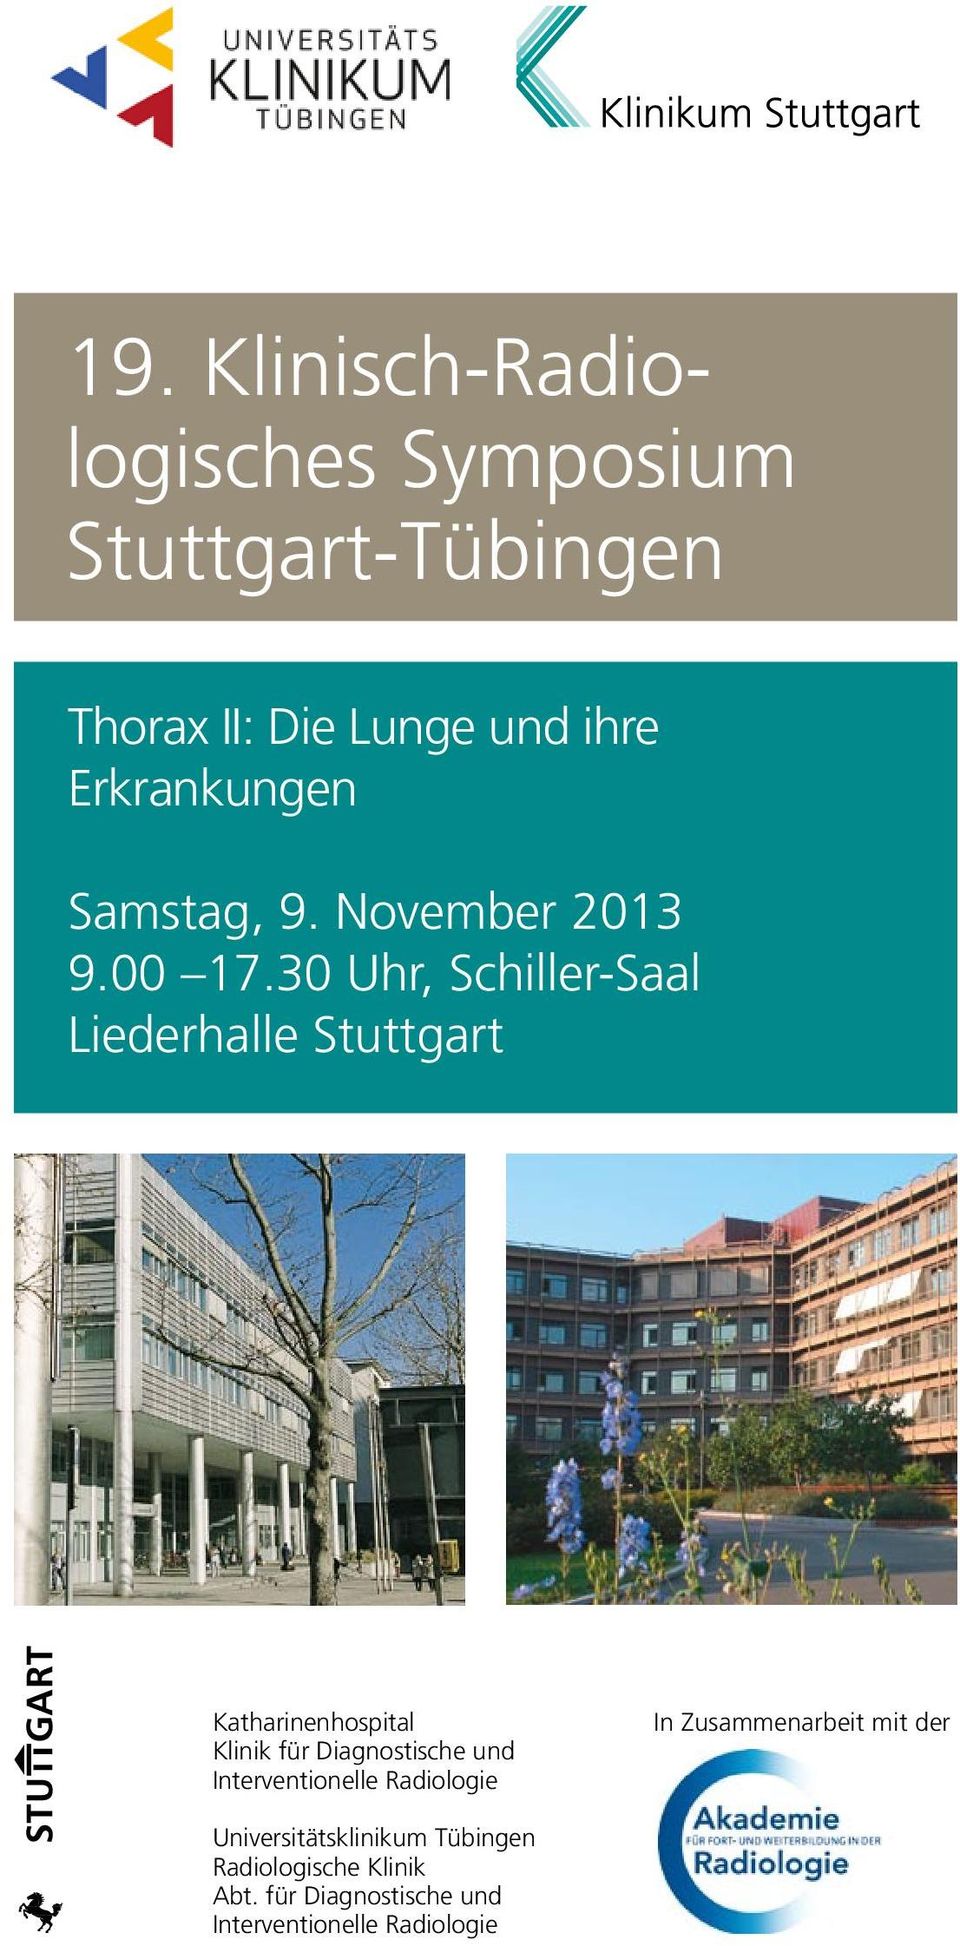 30 Uhr, Schiller-Saal Liederhalle Stuttgart Katharinenhospital Klinik für Diagnostische und